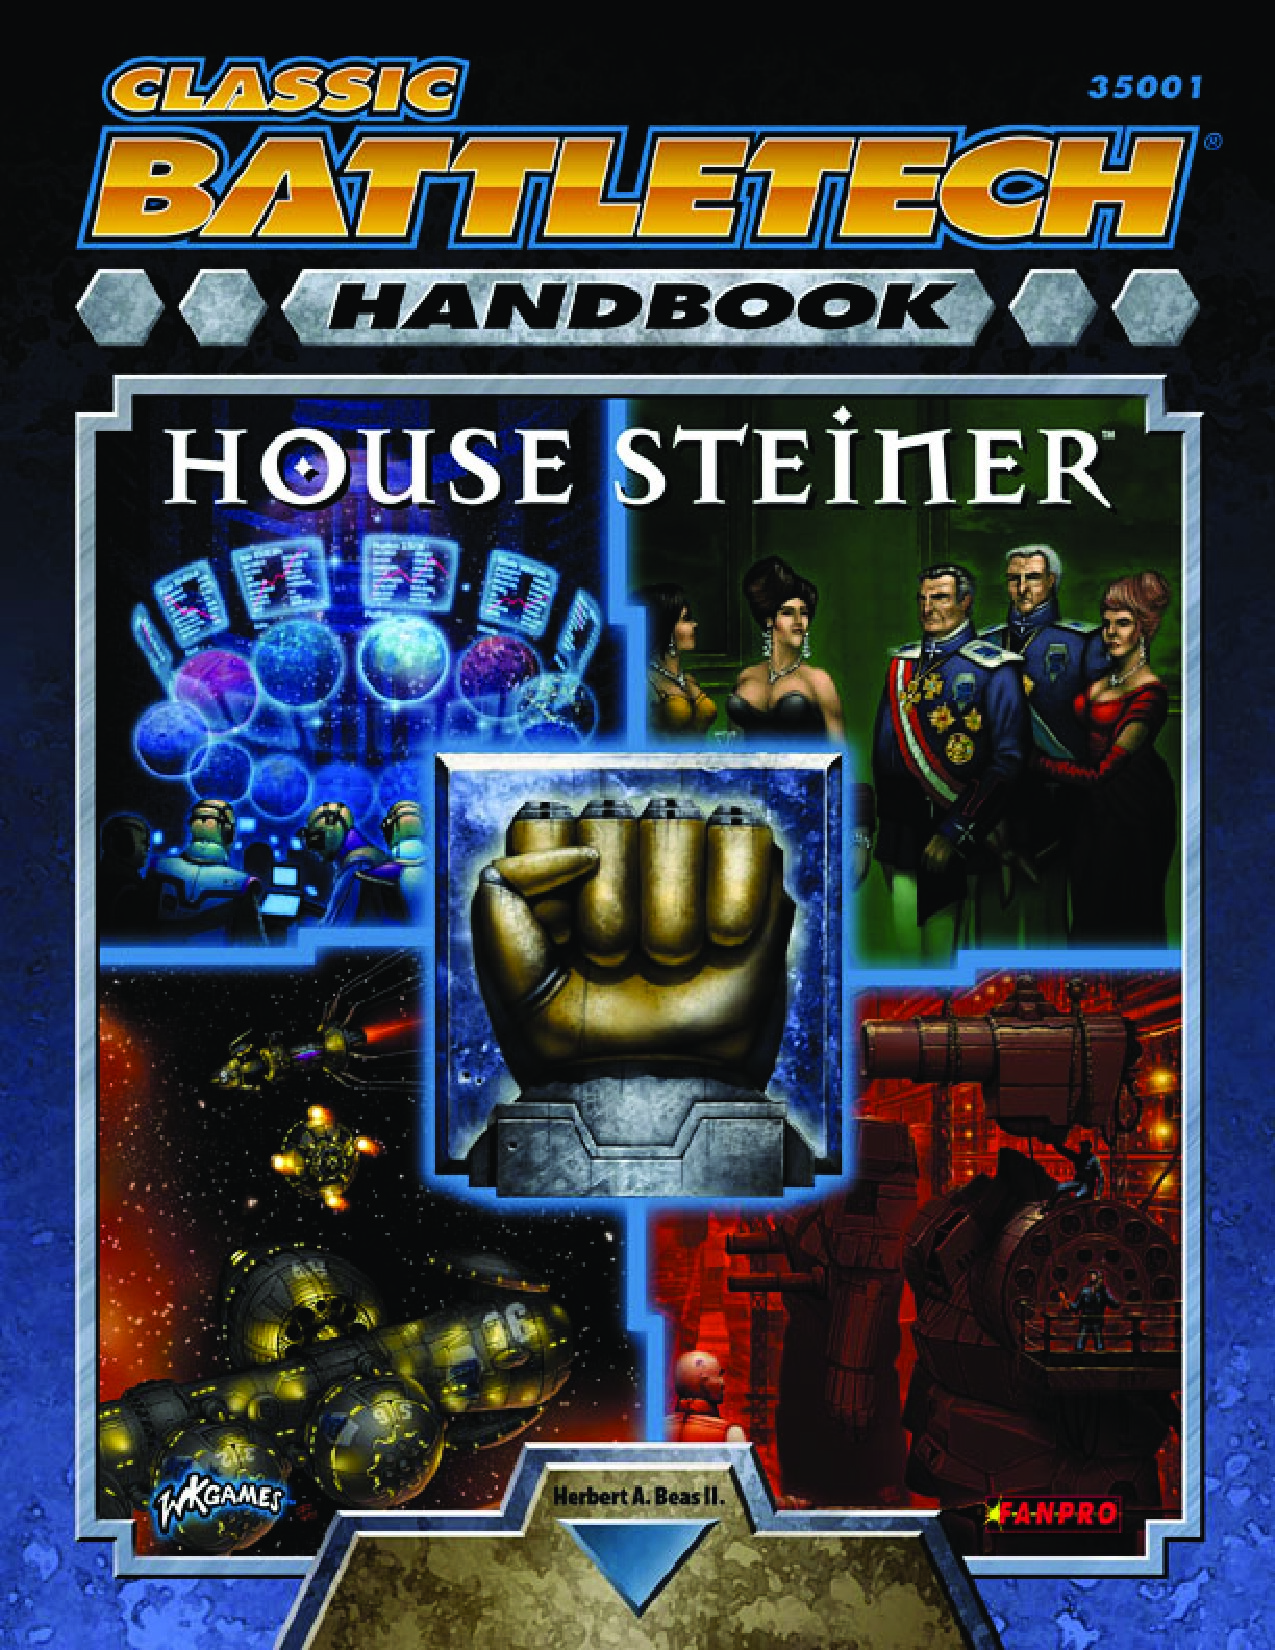 Classic Battletech Handbook House Steiner